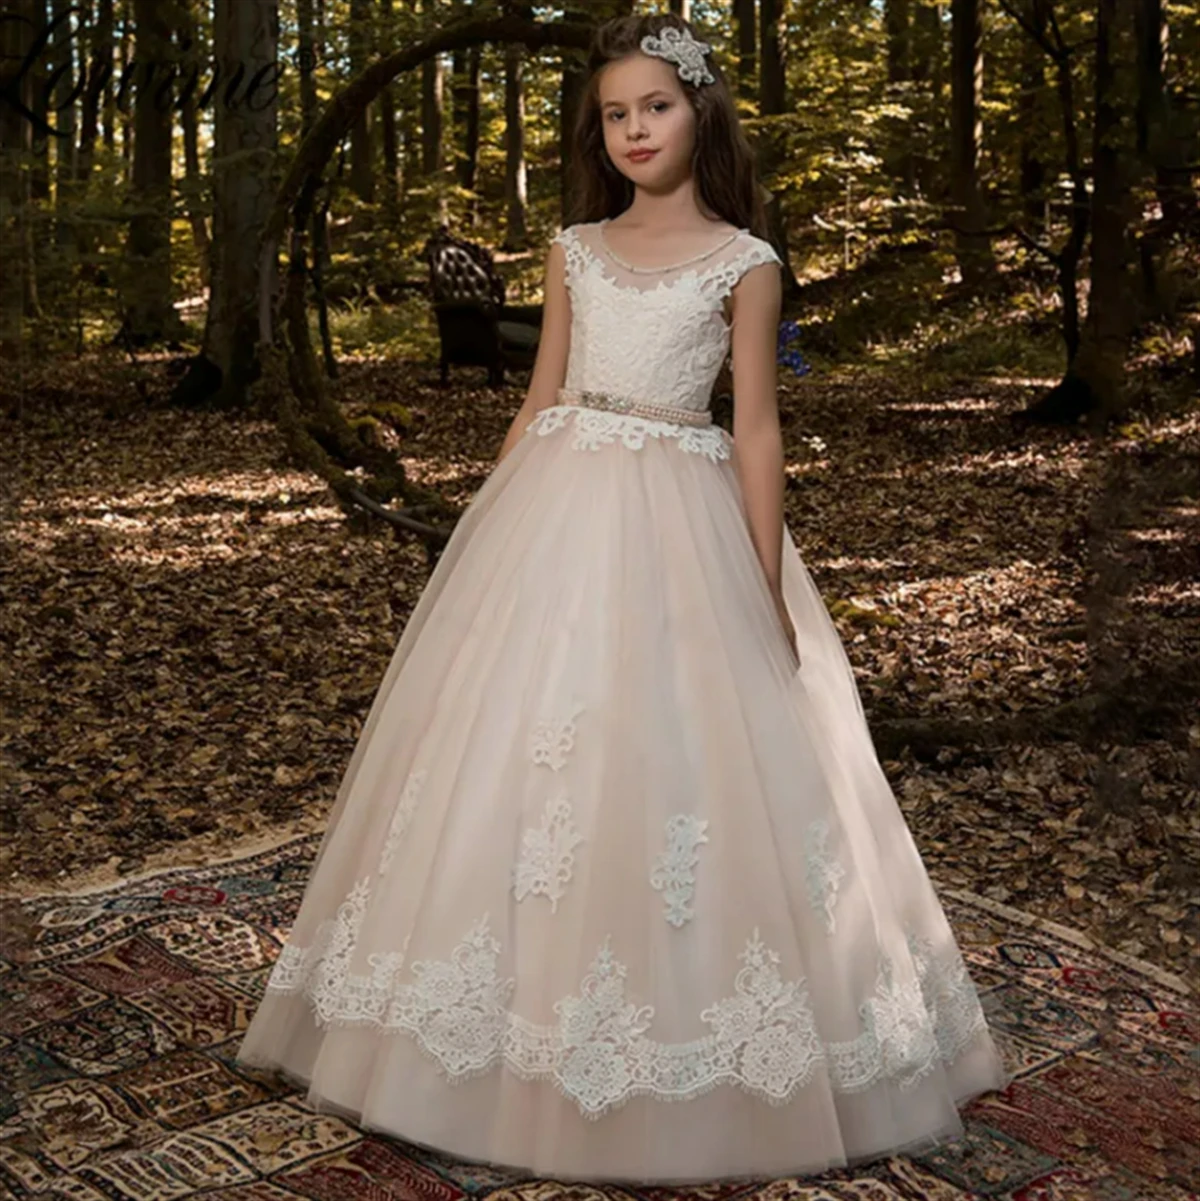 

Цветочное платье для девочки розовое пушистое Тюлевое кружевное свадебное платье с открытой спиной милый цветок детское платье для первого эухаристического дня рождения подарок для девочки